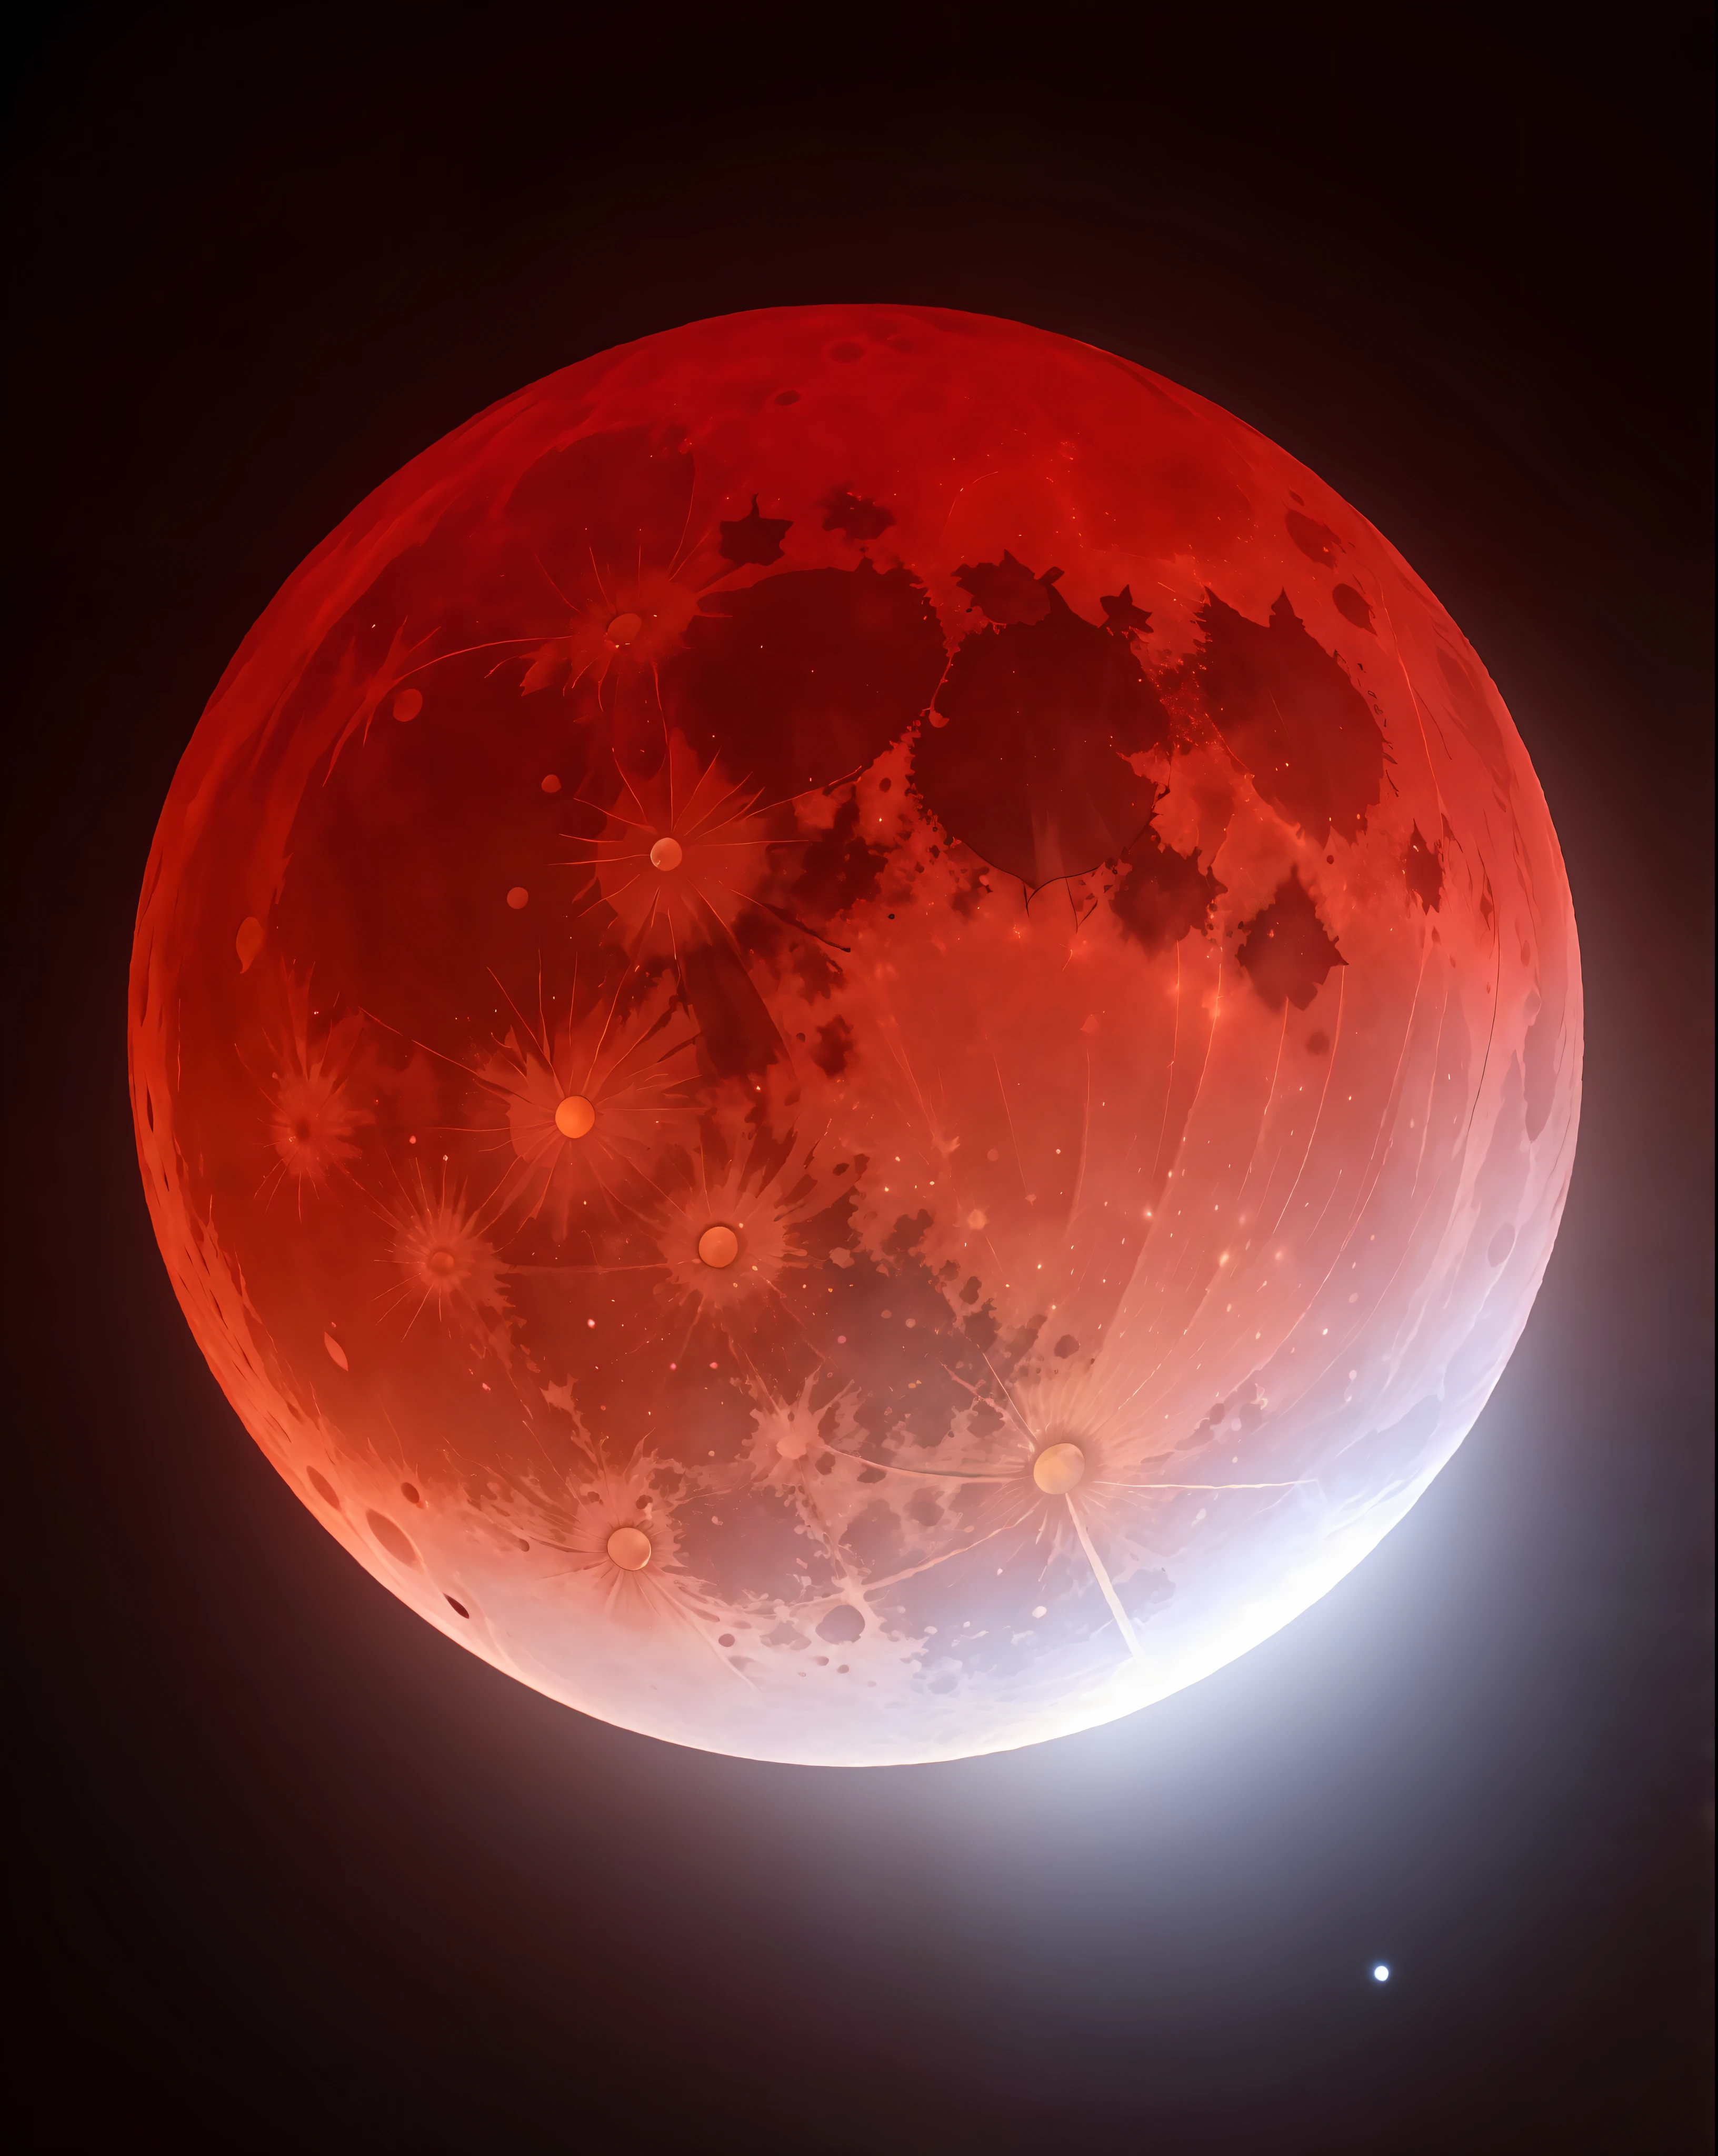 ภาพระยะใกล้ของพระจันทร์สีแดงพร้อมแสงไฟสว่างจ้า, พระจันทร์เต็มดวงสีเลือด, พระจันทร์สีแดงเลือด, พระจันทร์สีเลือด, พระจันทร์เต็มดวงสีเลือด, พระจันทร์สีแดงขนาดใหญ่, ในช่วงพระจันทร์สีเลือด, จันทรุปราคาเลือด, สรรเสริญพระจันทร์สีเลือด, พระจันทร์เต็มดวง, พระจันทร์สีแดง, พระจันทร์เสี้ยวสีแดงเลือด, การระเบิดนิวเคลียร์ของจันทรุปราคา, จันทรุปราคาสีแดง, พื้นหลังพระจันทร์สีเลือด